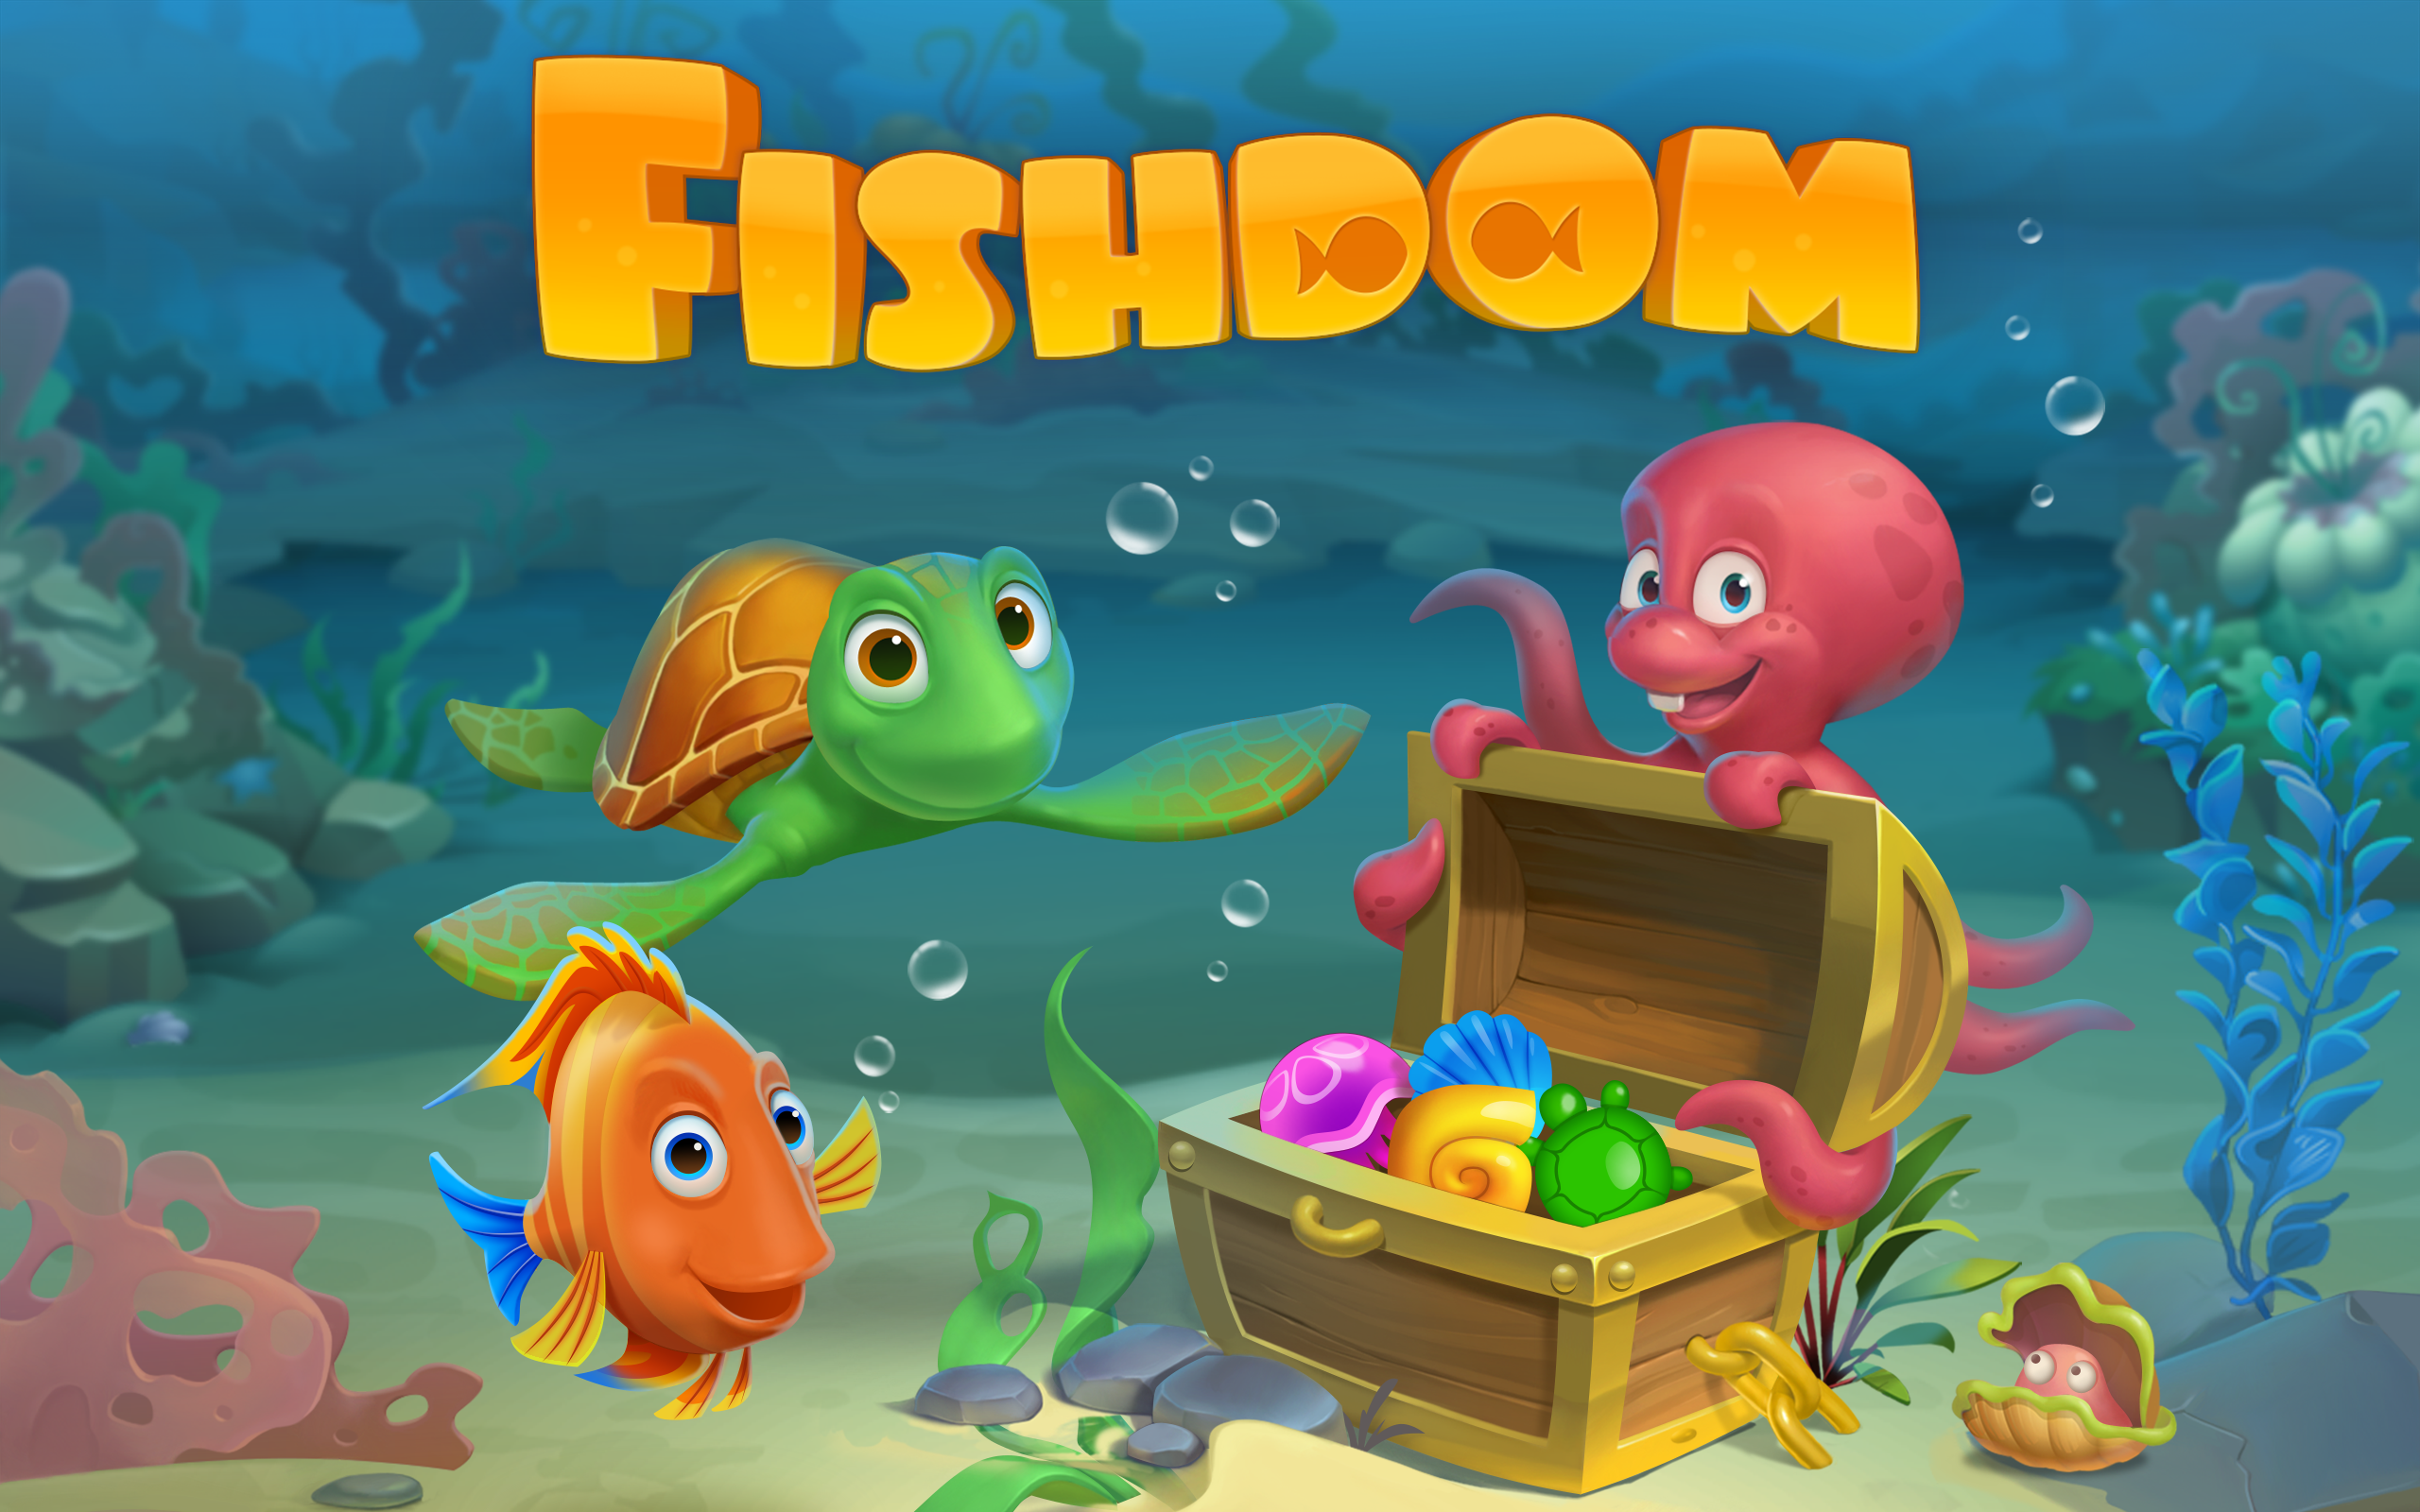 Играть рыбы 3. Аквариум из игры Fishdom. Игра рыбки в аквариуме Fishdom. Игра Fishdom 2. Игра плейрикс Fishdom.